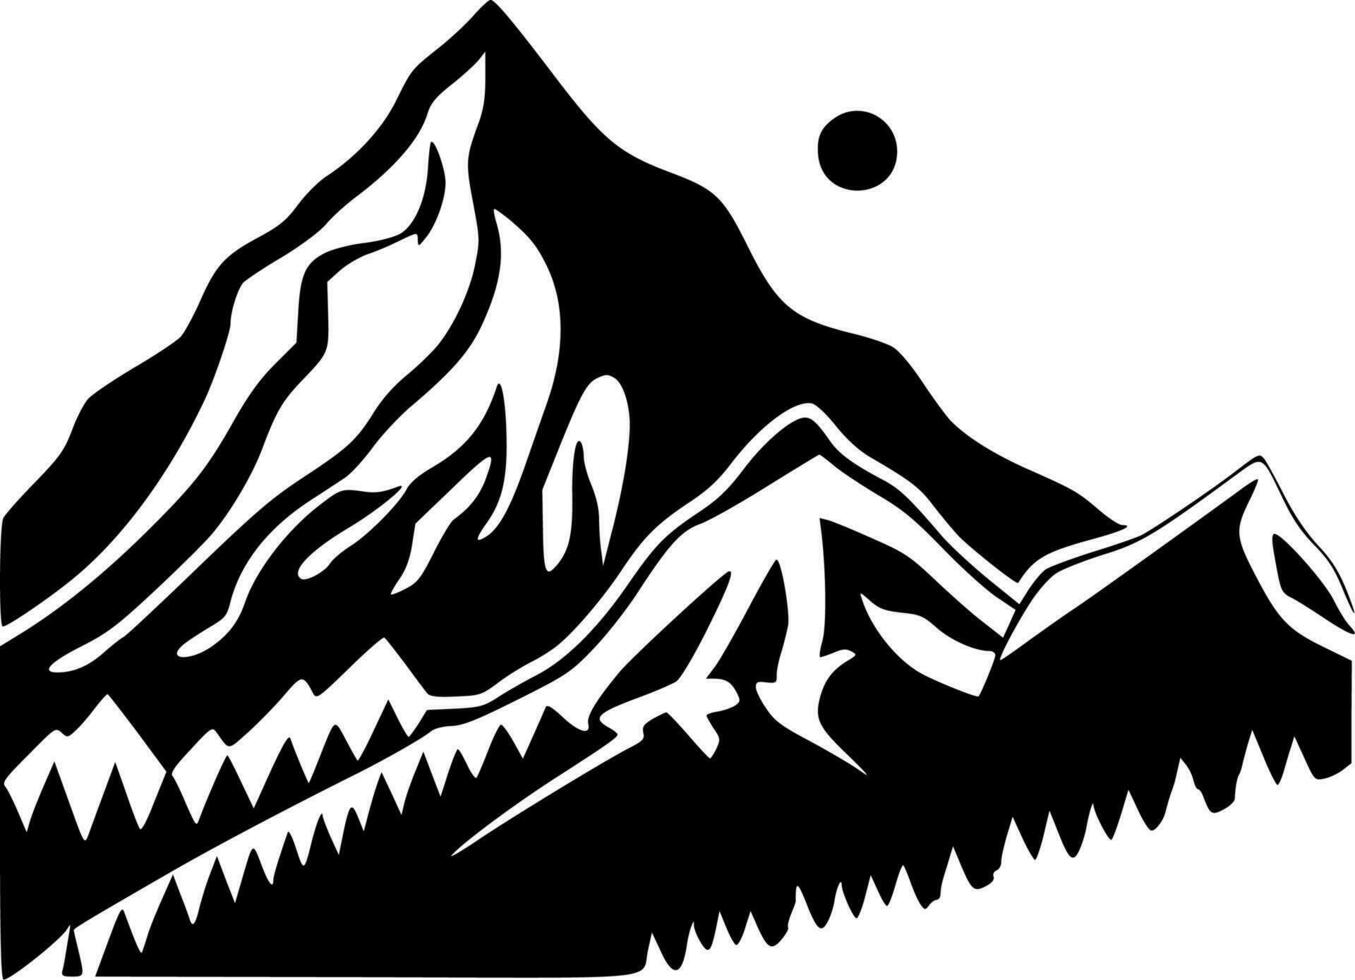 montanhas - Alto qualidade vetor logotipo - vetor ilustração ideal para camiseta gráfico